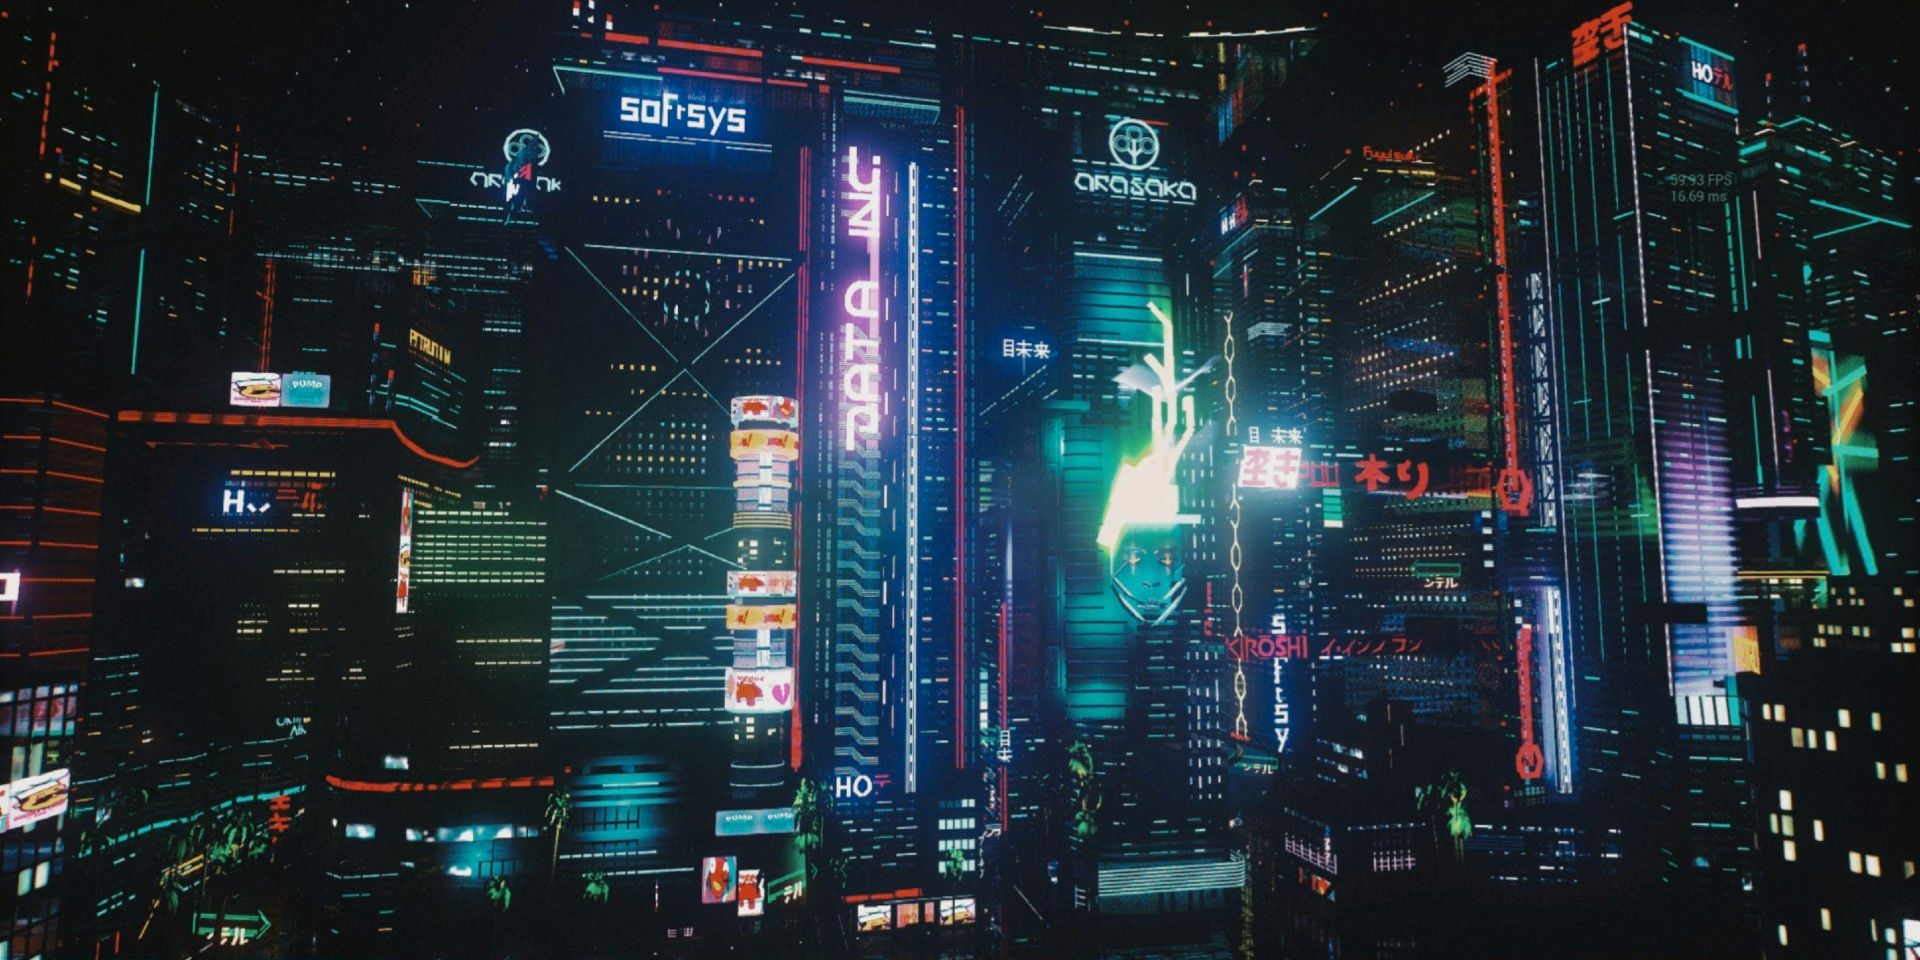 El jugador creativo de Fortnite reconstruye la ciudad nocturna de Cyberpunk 2077